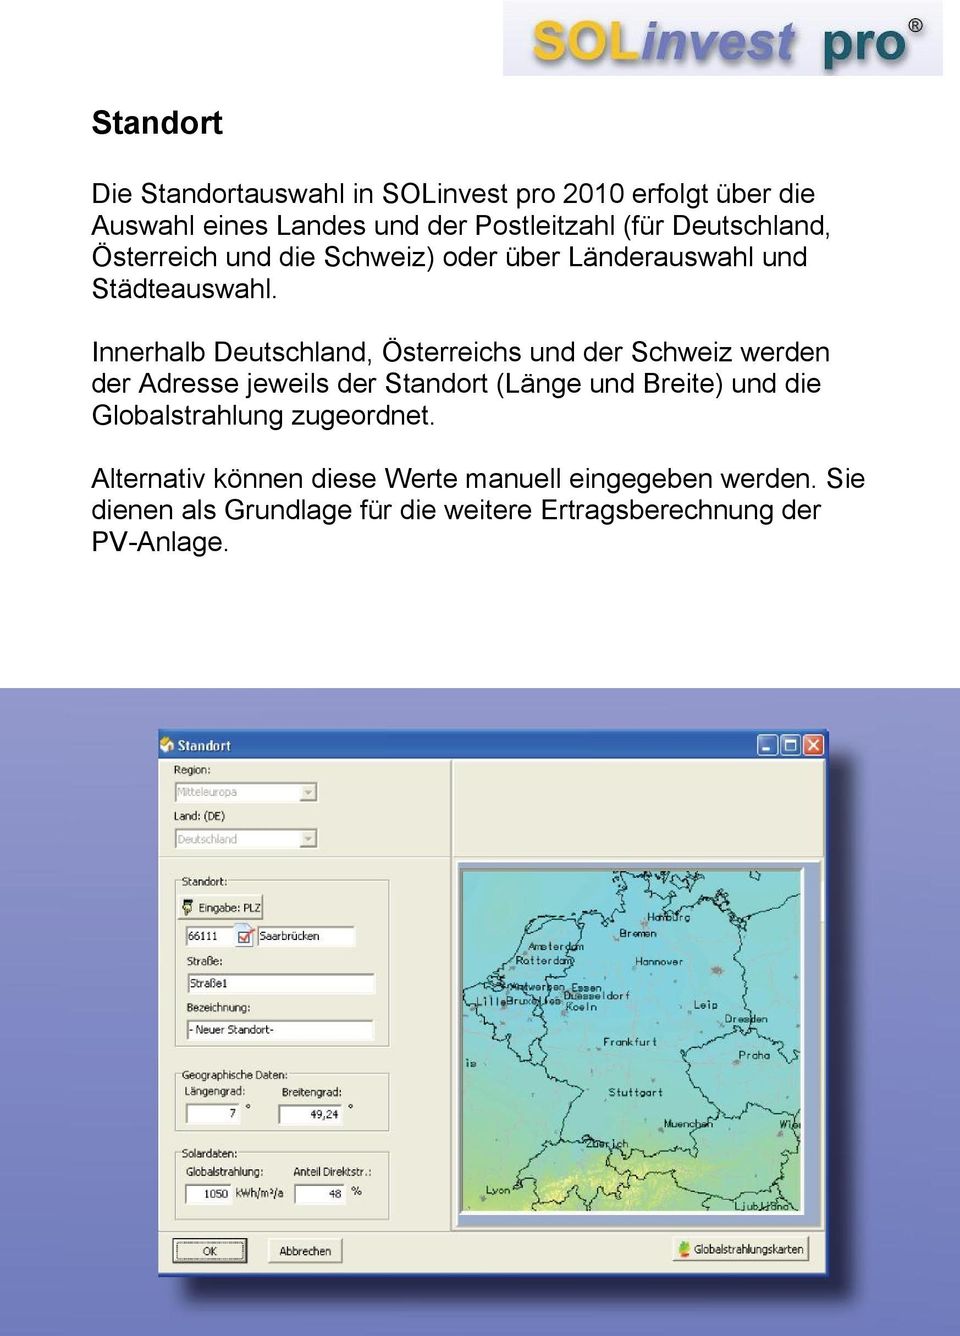 Innerhalb Deutschland, Österreichs und der Schweiz werden der Adresse jeweils der Standort (Länge und Breite) und die